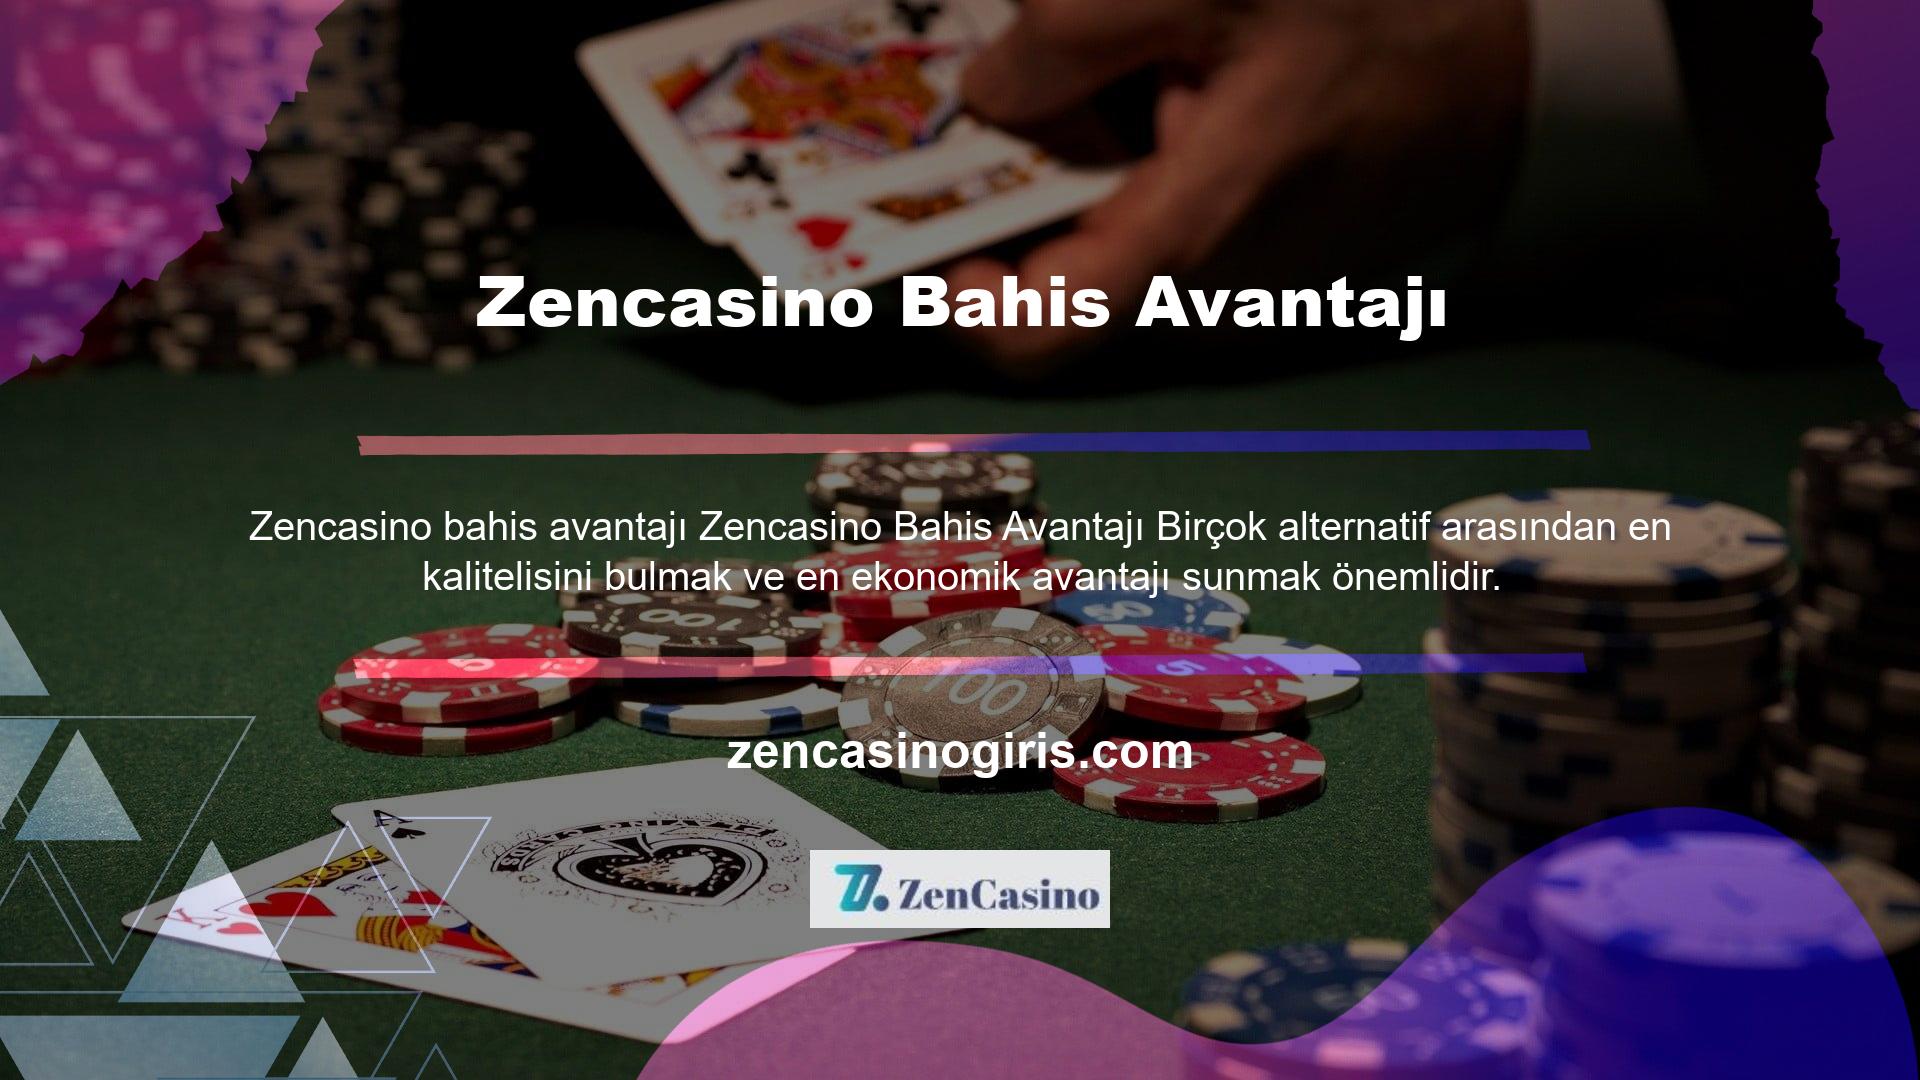 Zencasino arayan kullanıcılar birçok farklı kaynaktan bilgi alabilirler